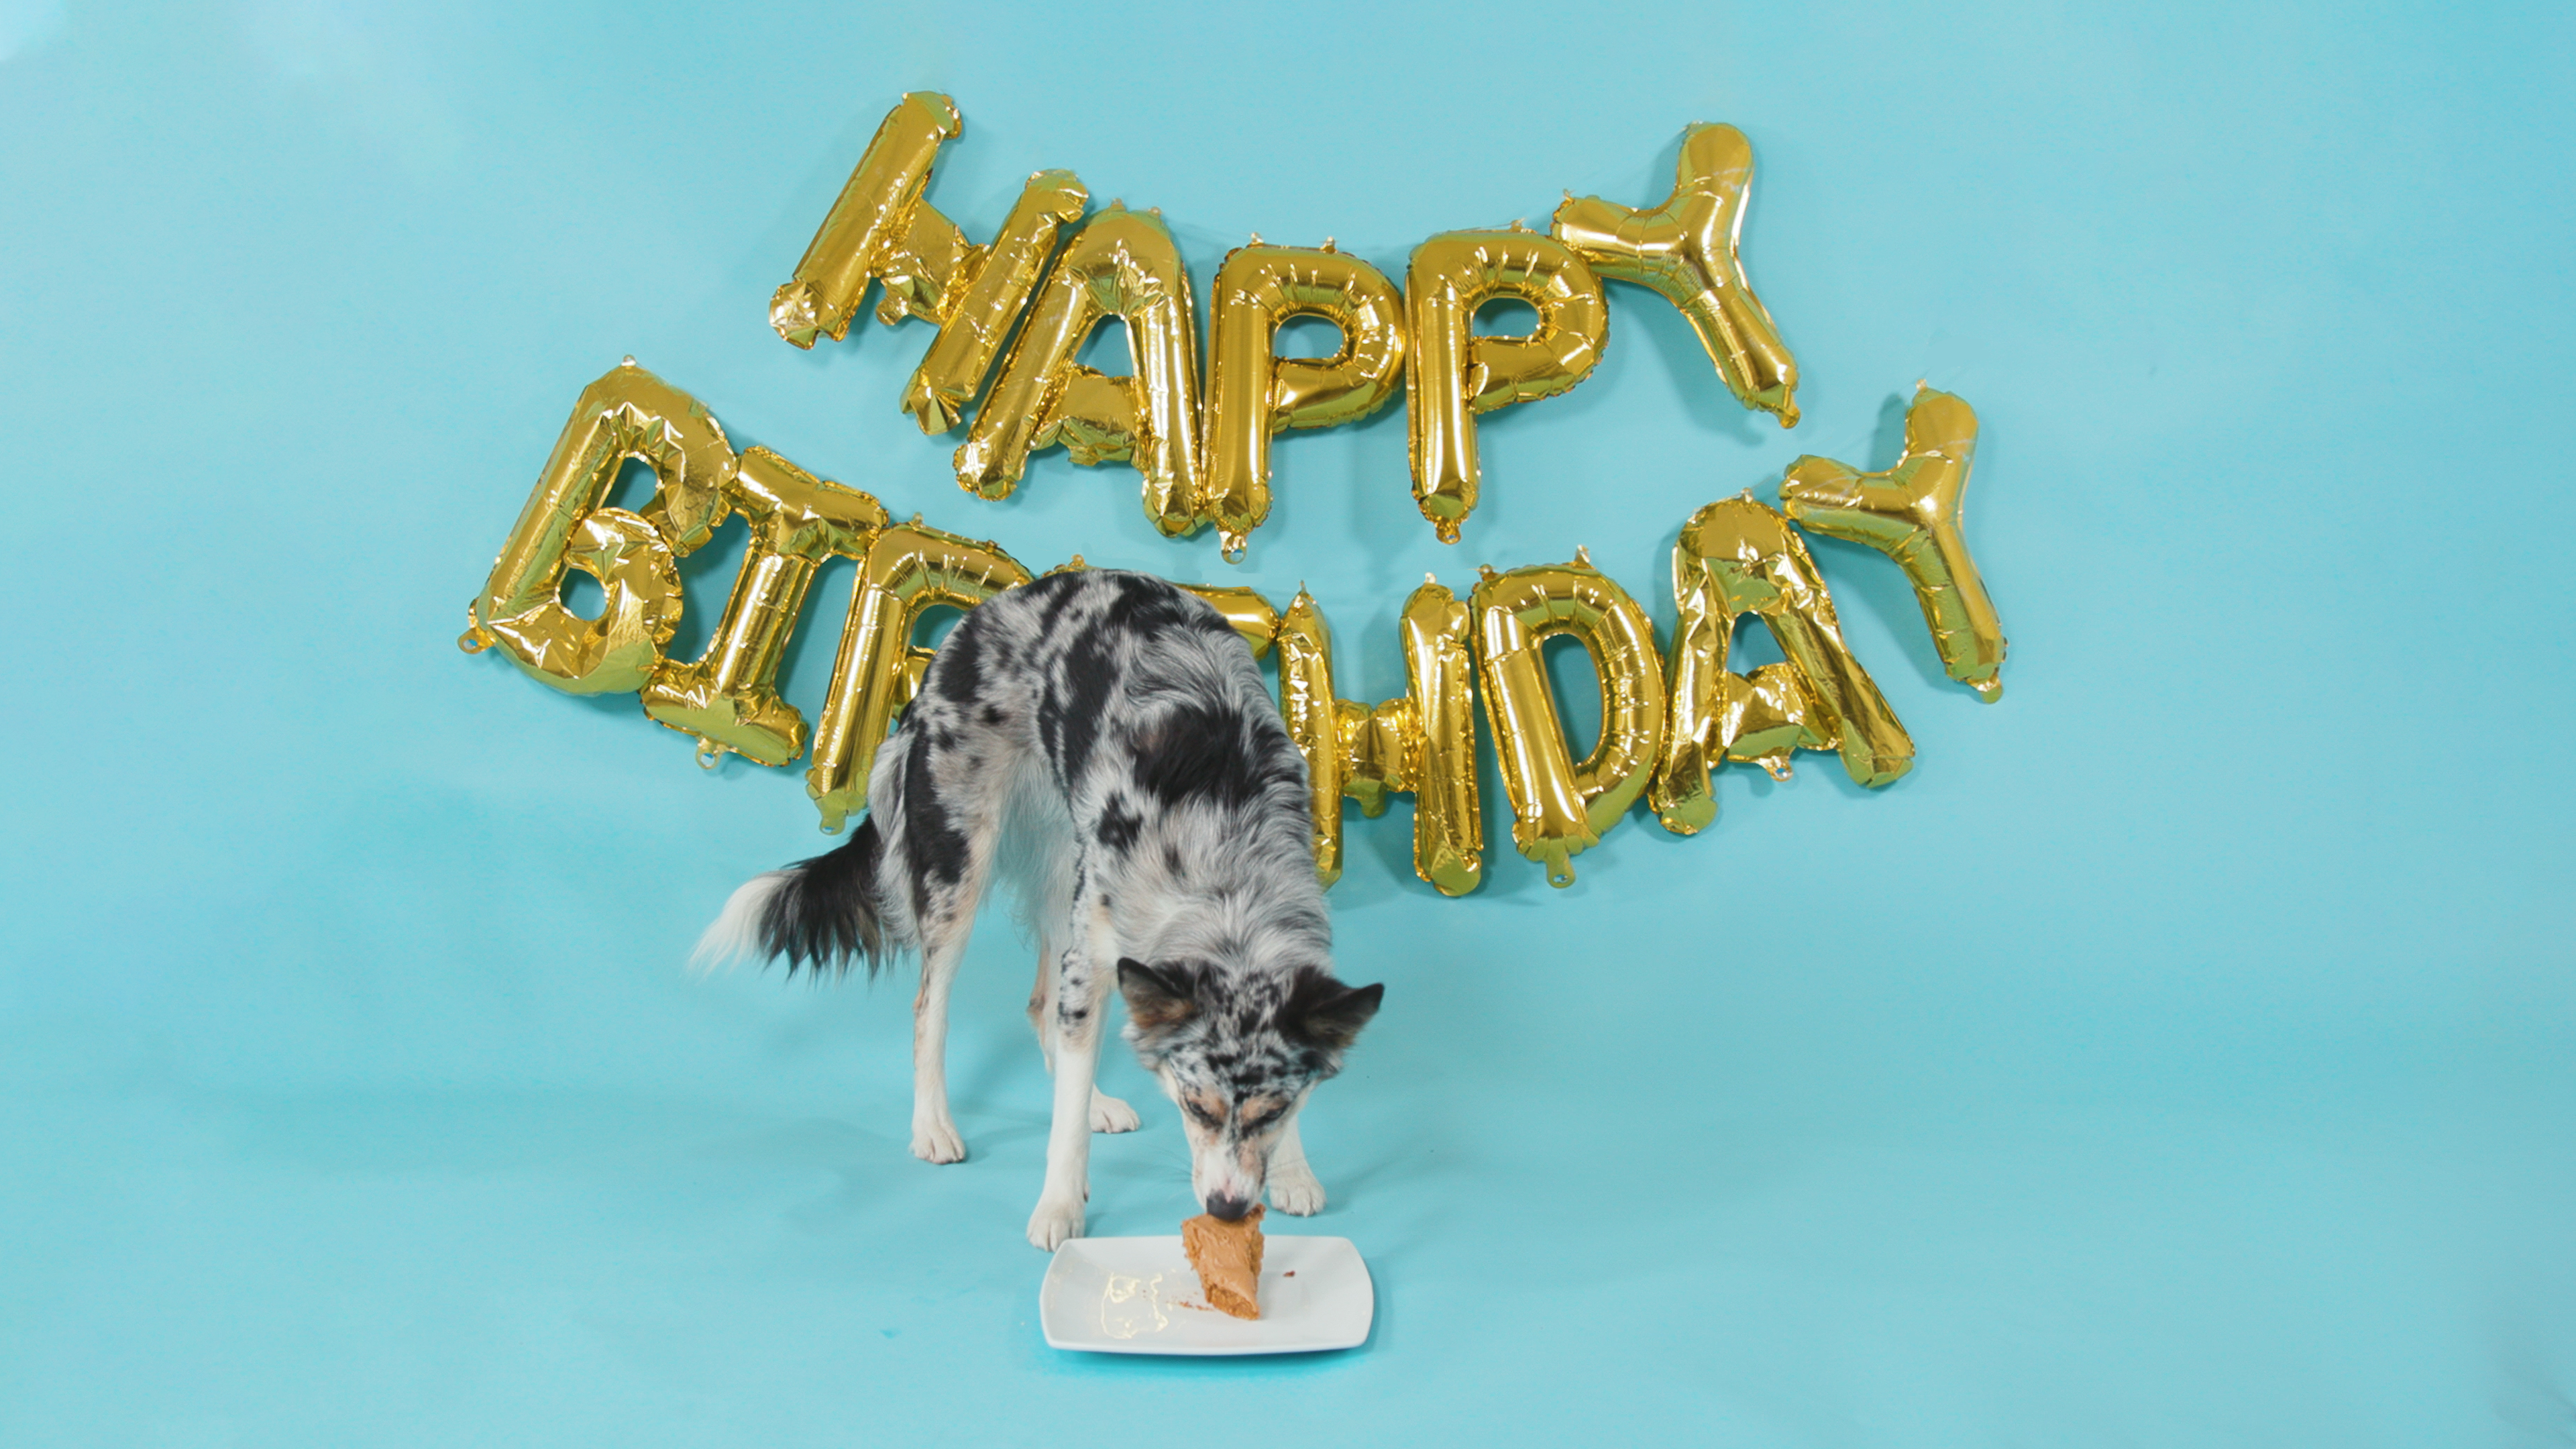 Dog eating dog-friendly birthday cake